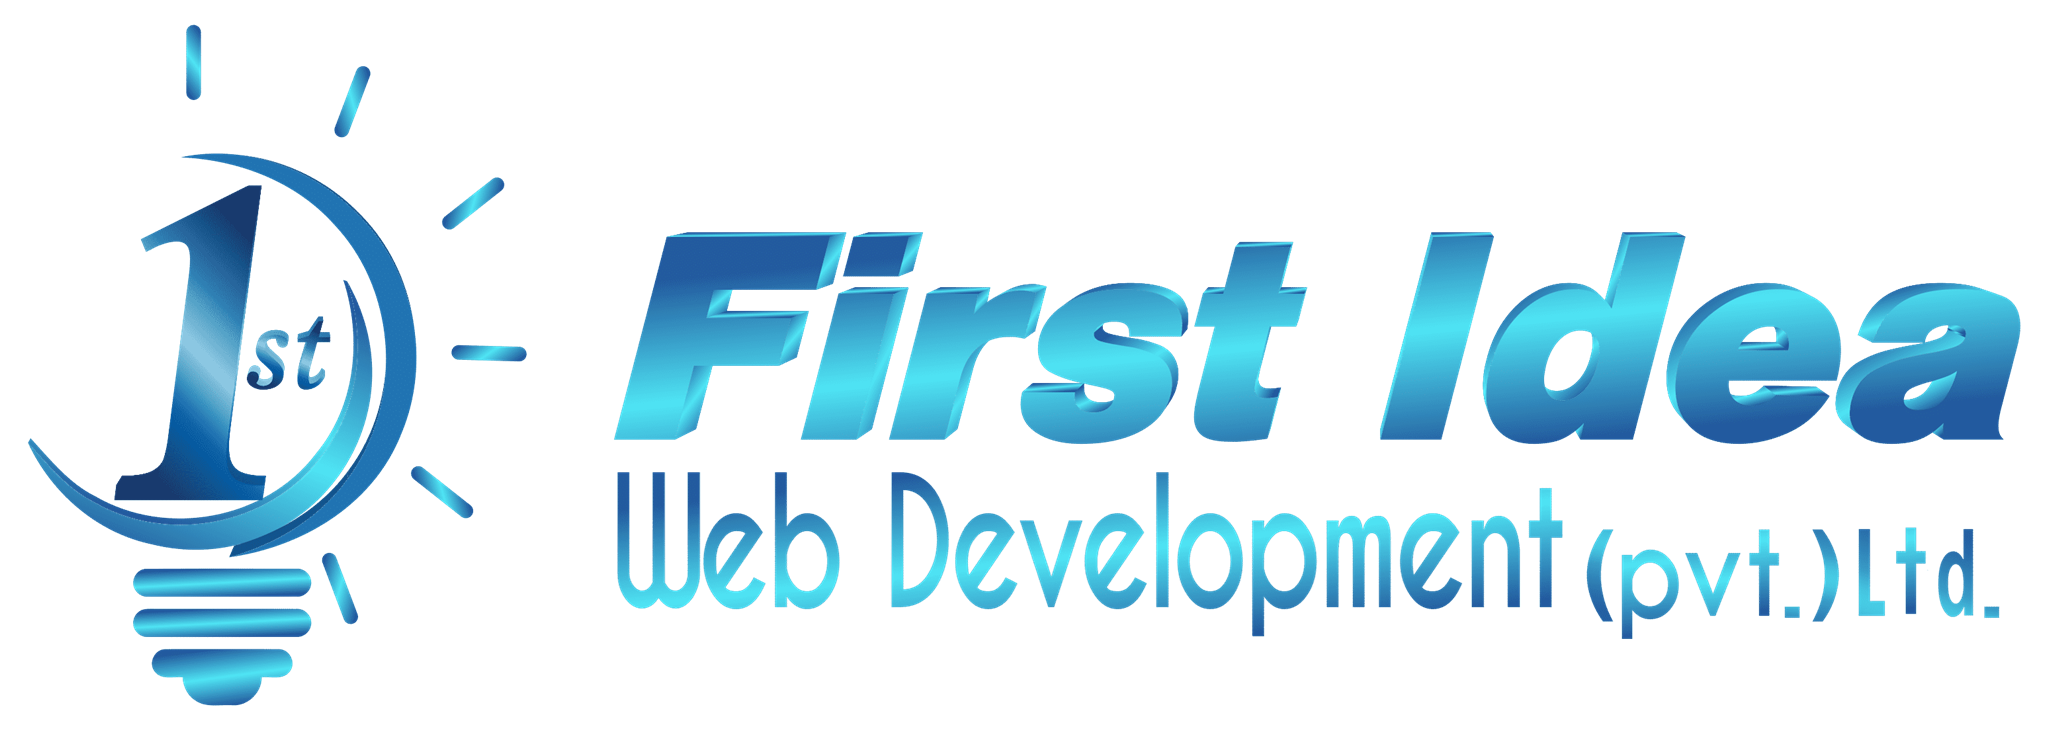 First Idea Web Development (pvt.)Ltd.